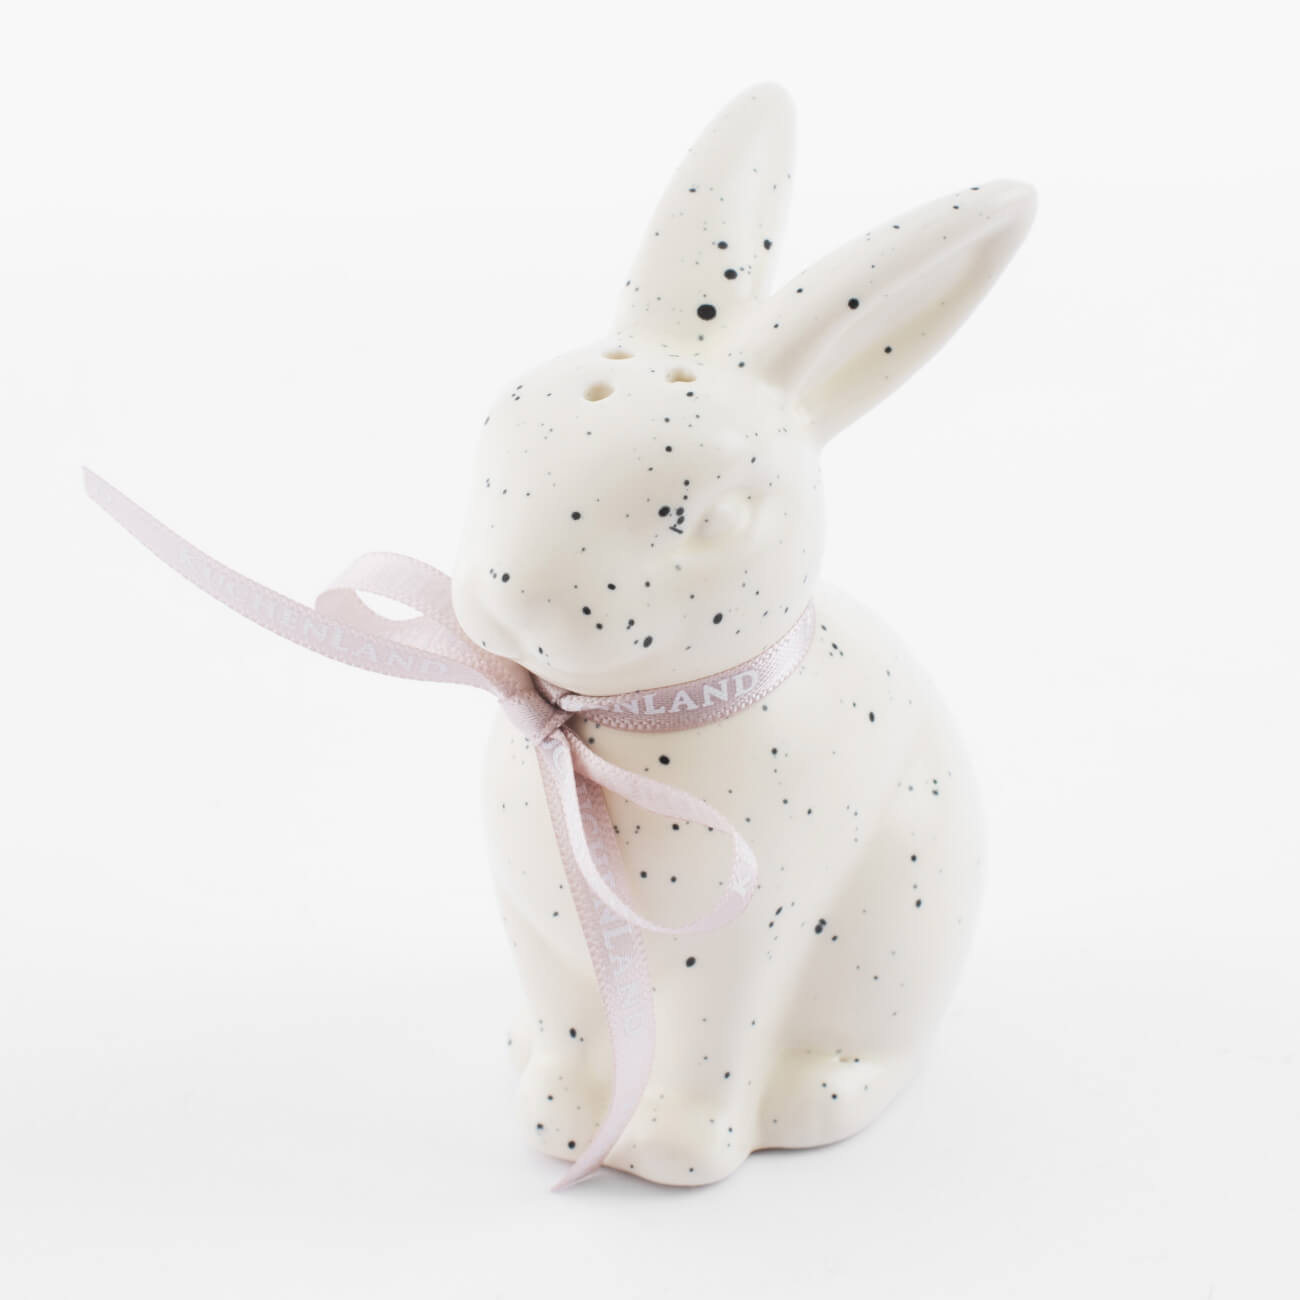 статуэтка с подсветкой 13 см фарфор p белая кролик с ами easter Емкость для соли или перца, 10 см, фарфор P, молочная, в крапинку, Кролик, Natural Easter